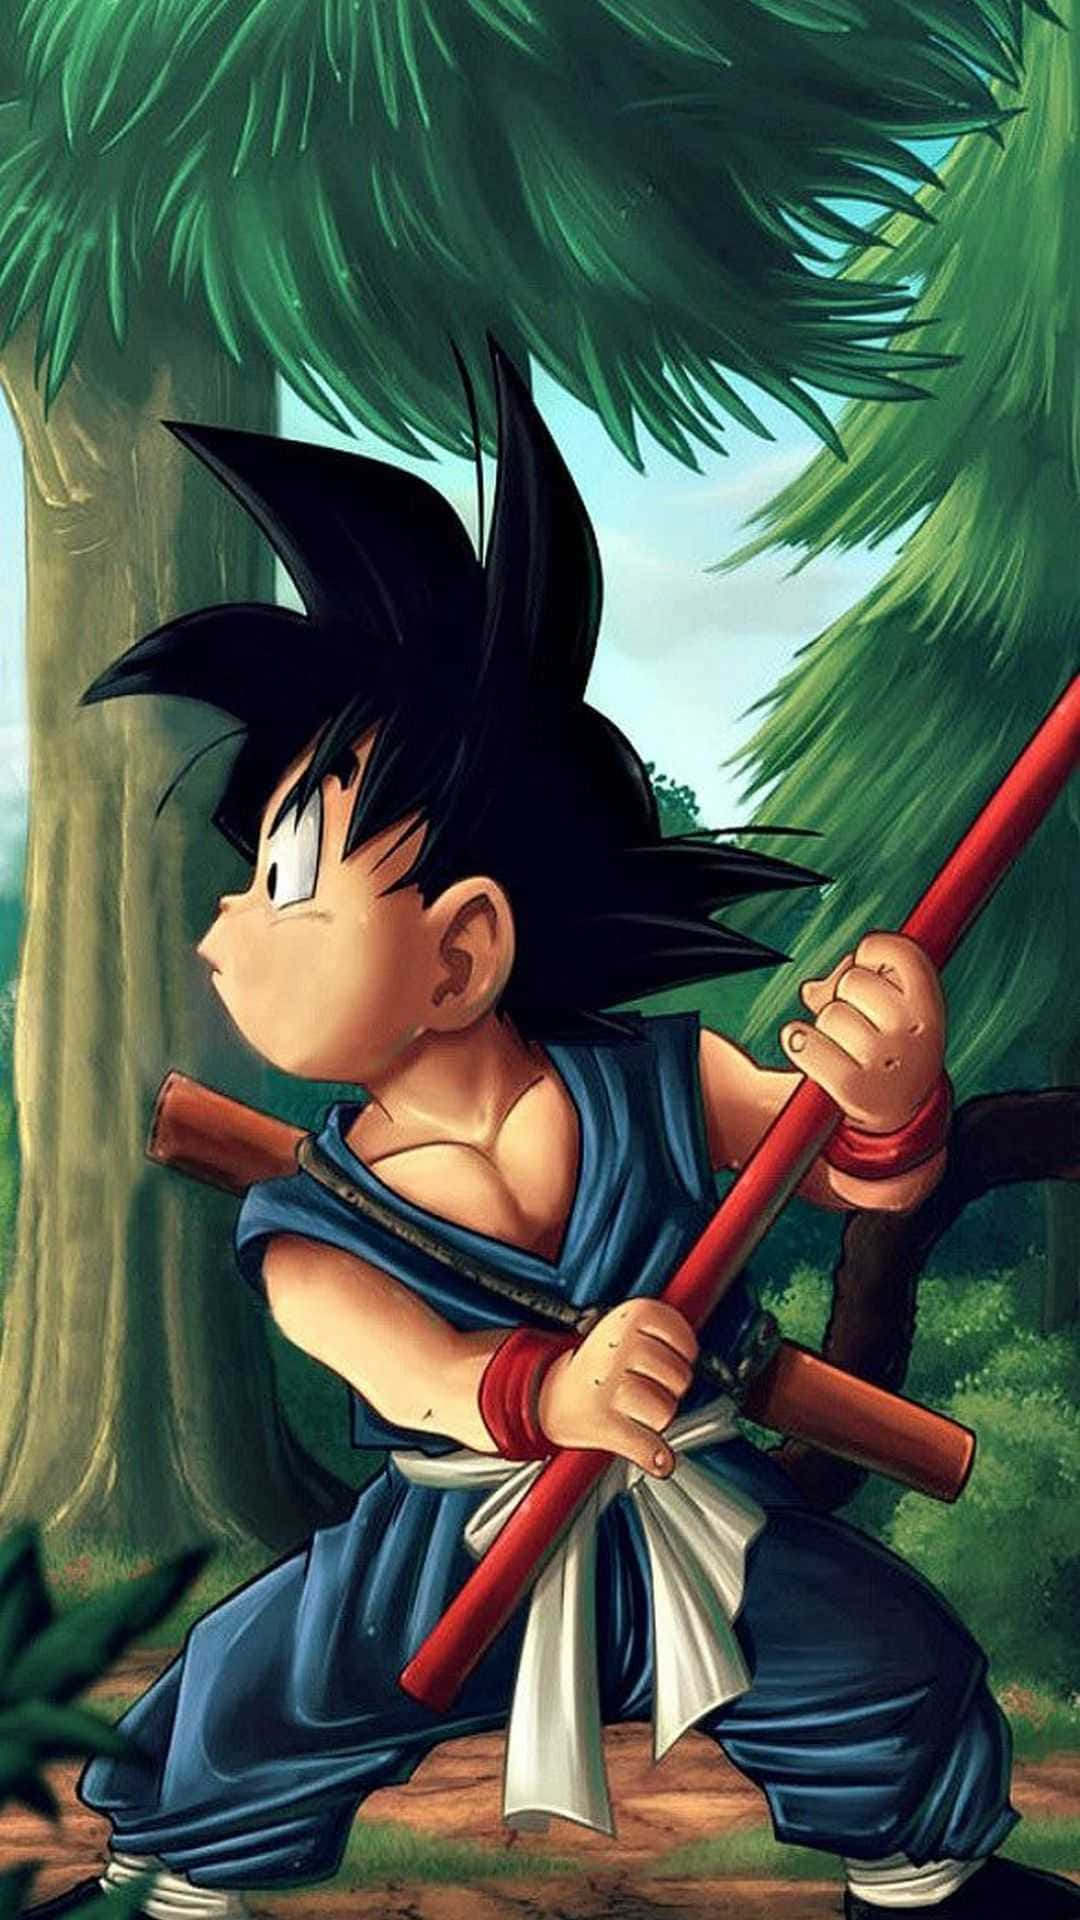 Kid Goku styrker med Kaio-ken. Wallpaper